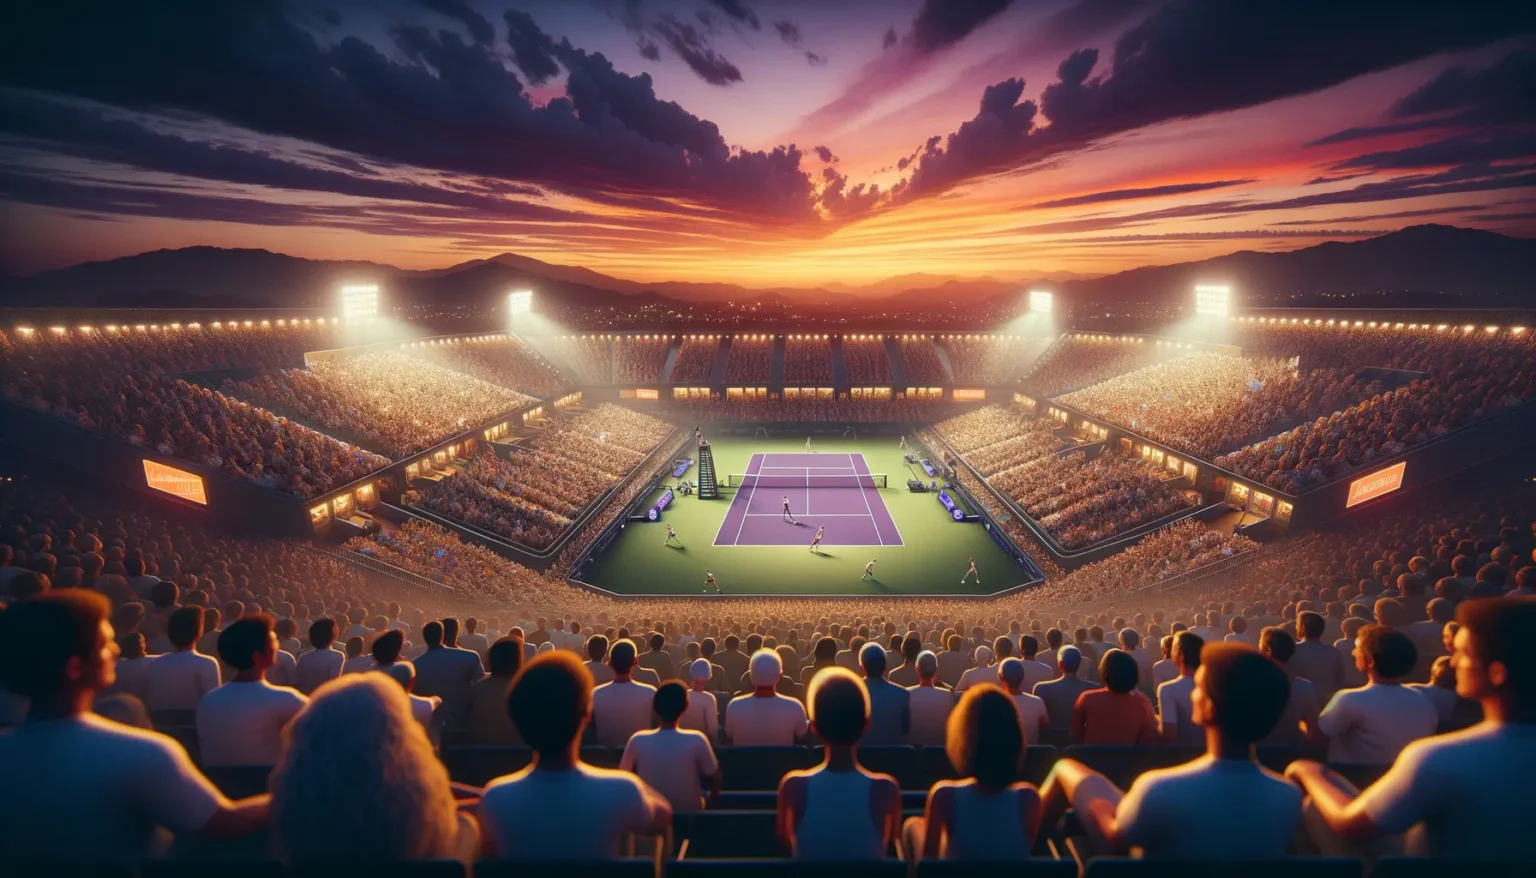 Beleuchtetes Tennisstadion bei Sonnenuntergang, prall gefüllt mit Zuschauern, die ein Match auf einem zentral gelegenen Hartplatz verfolgen, mit dramatischem Himmel und Bergsilhouette im Hintergrund.